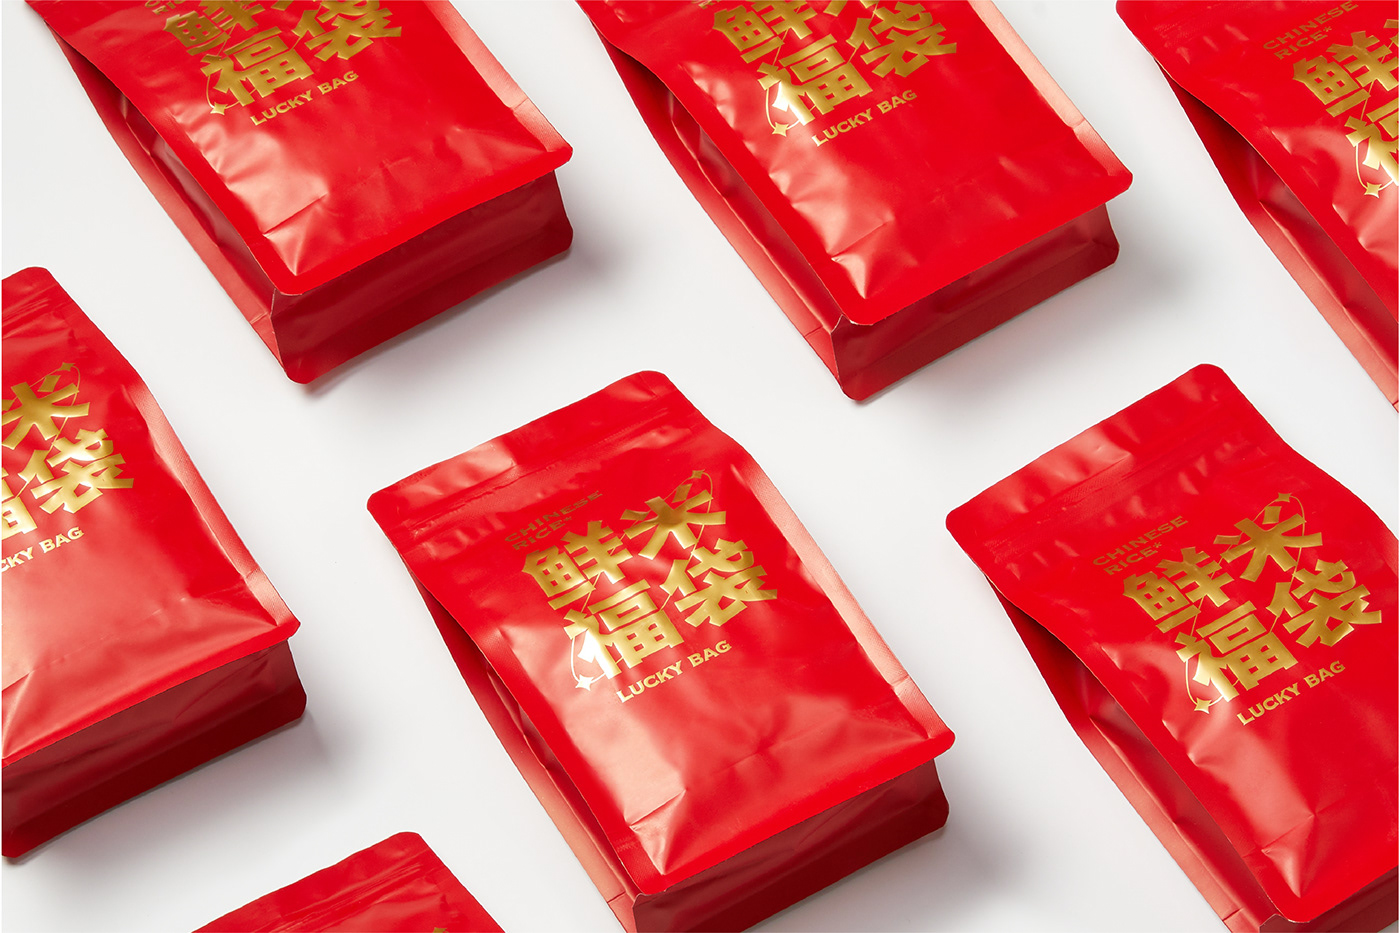 brand branding  logo package Packaging Rice 中国五常 包装 大米 食品包装设计